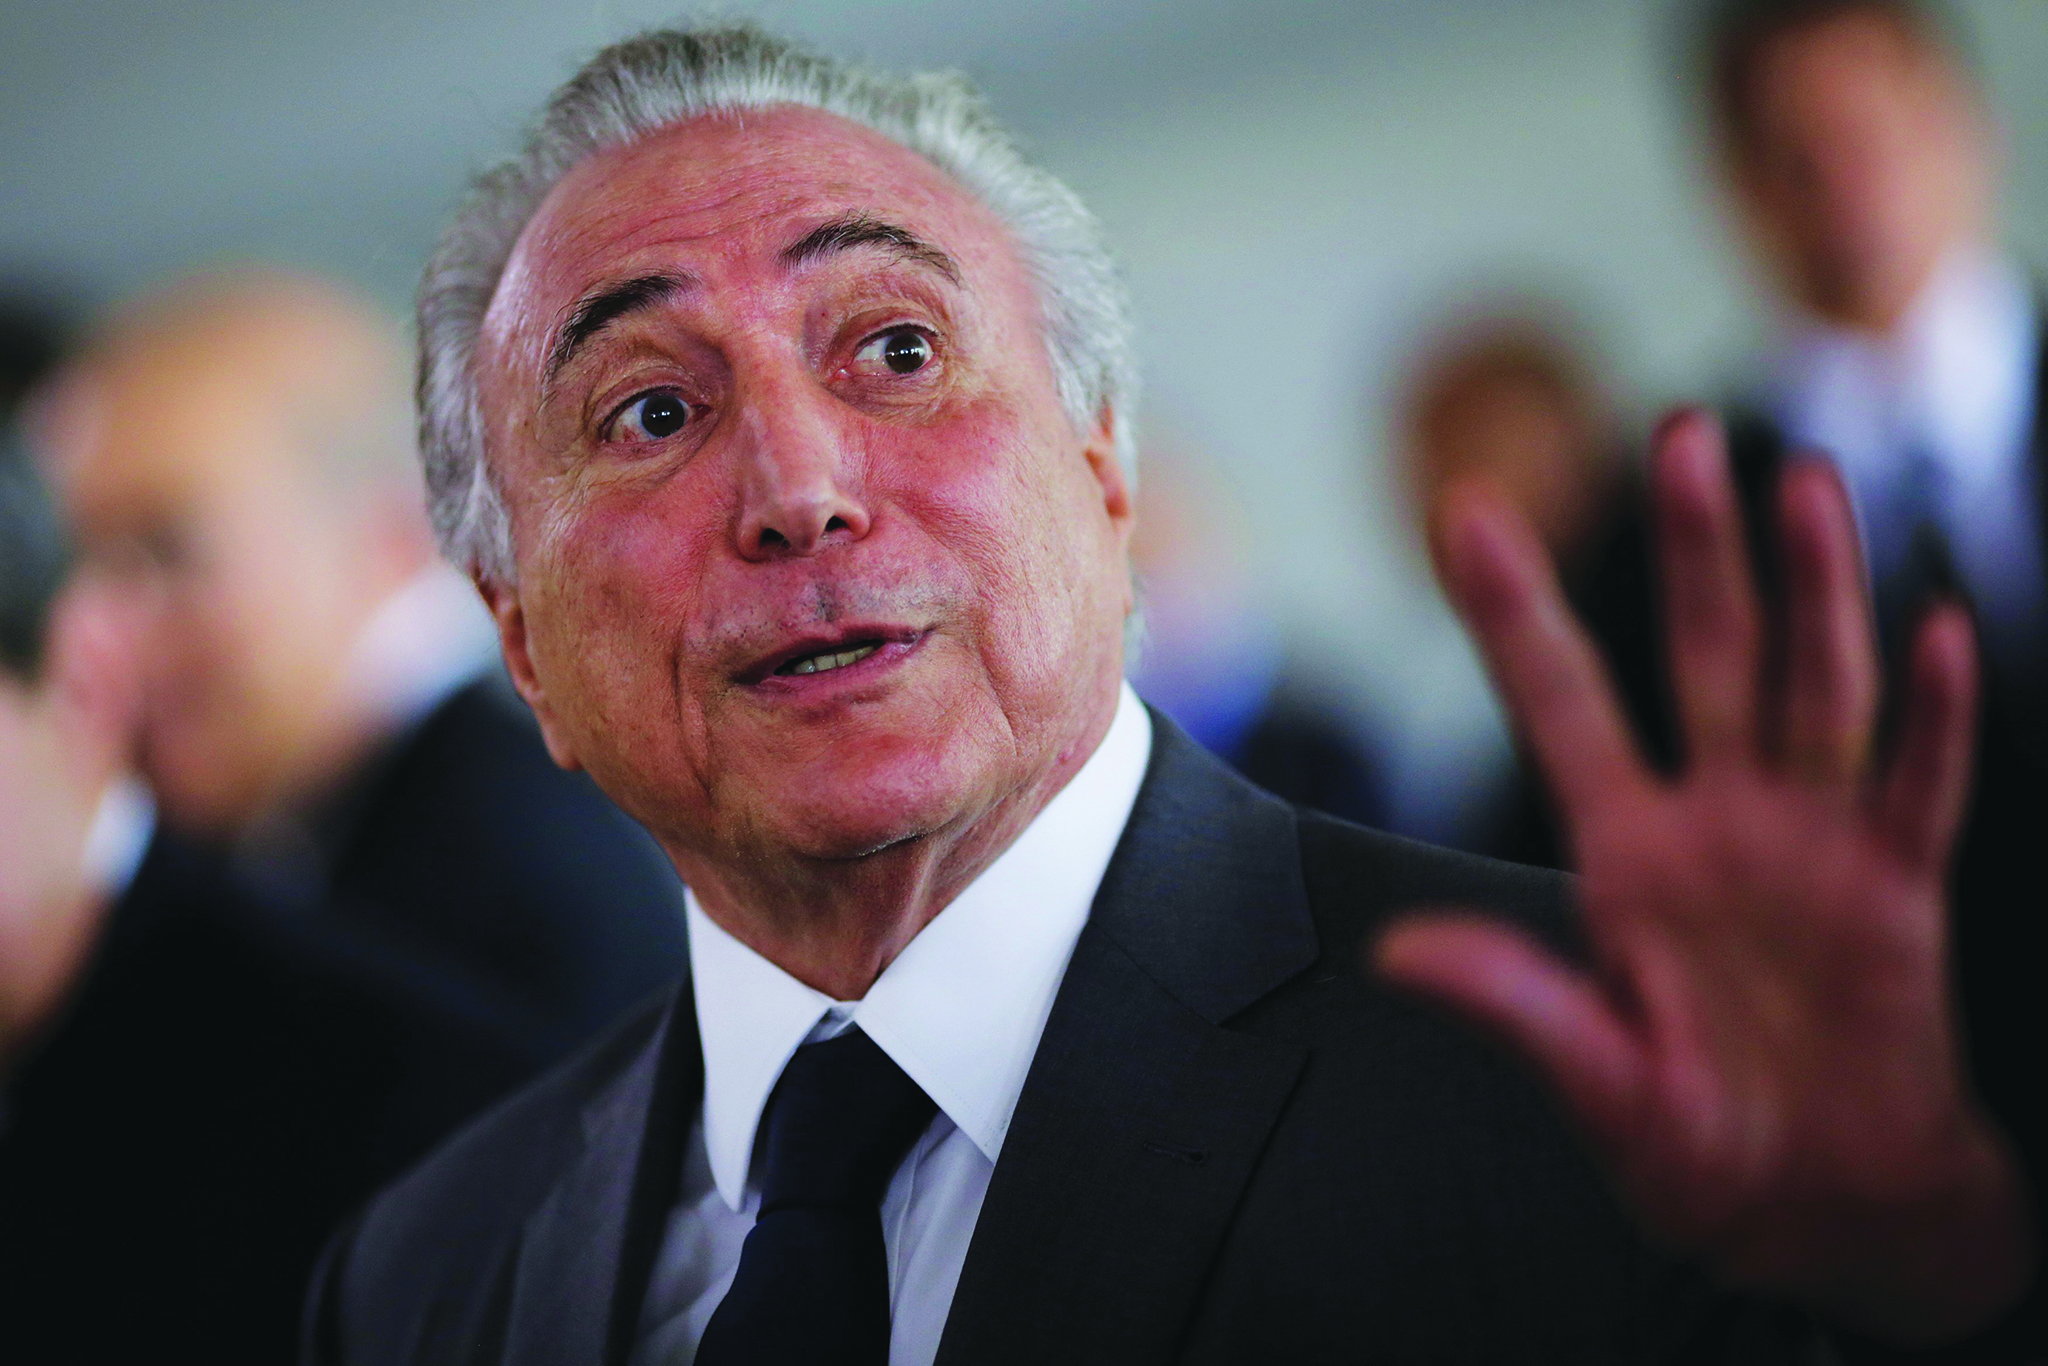 Polícia federal pede o indiciamento do Presidente do Brasil em caso de corrupção